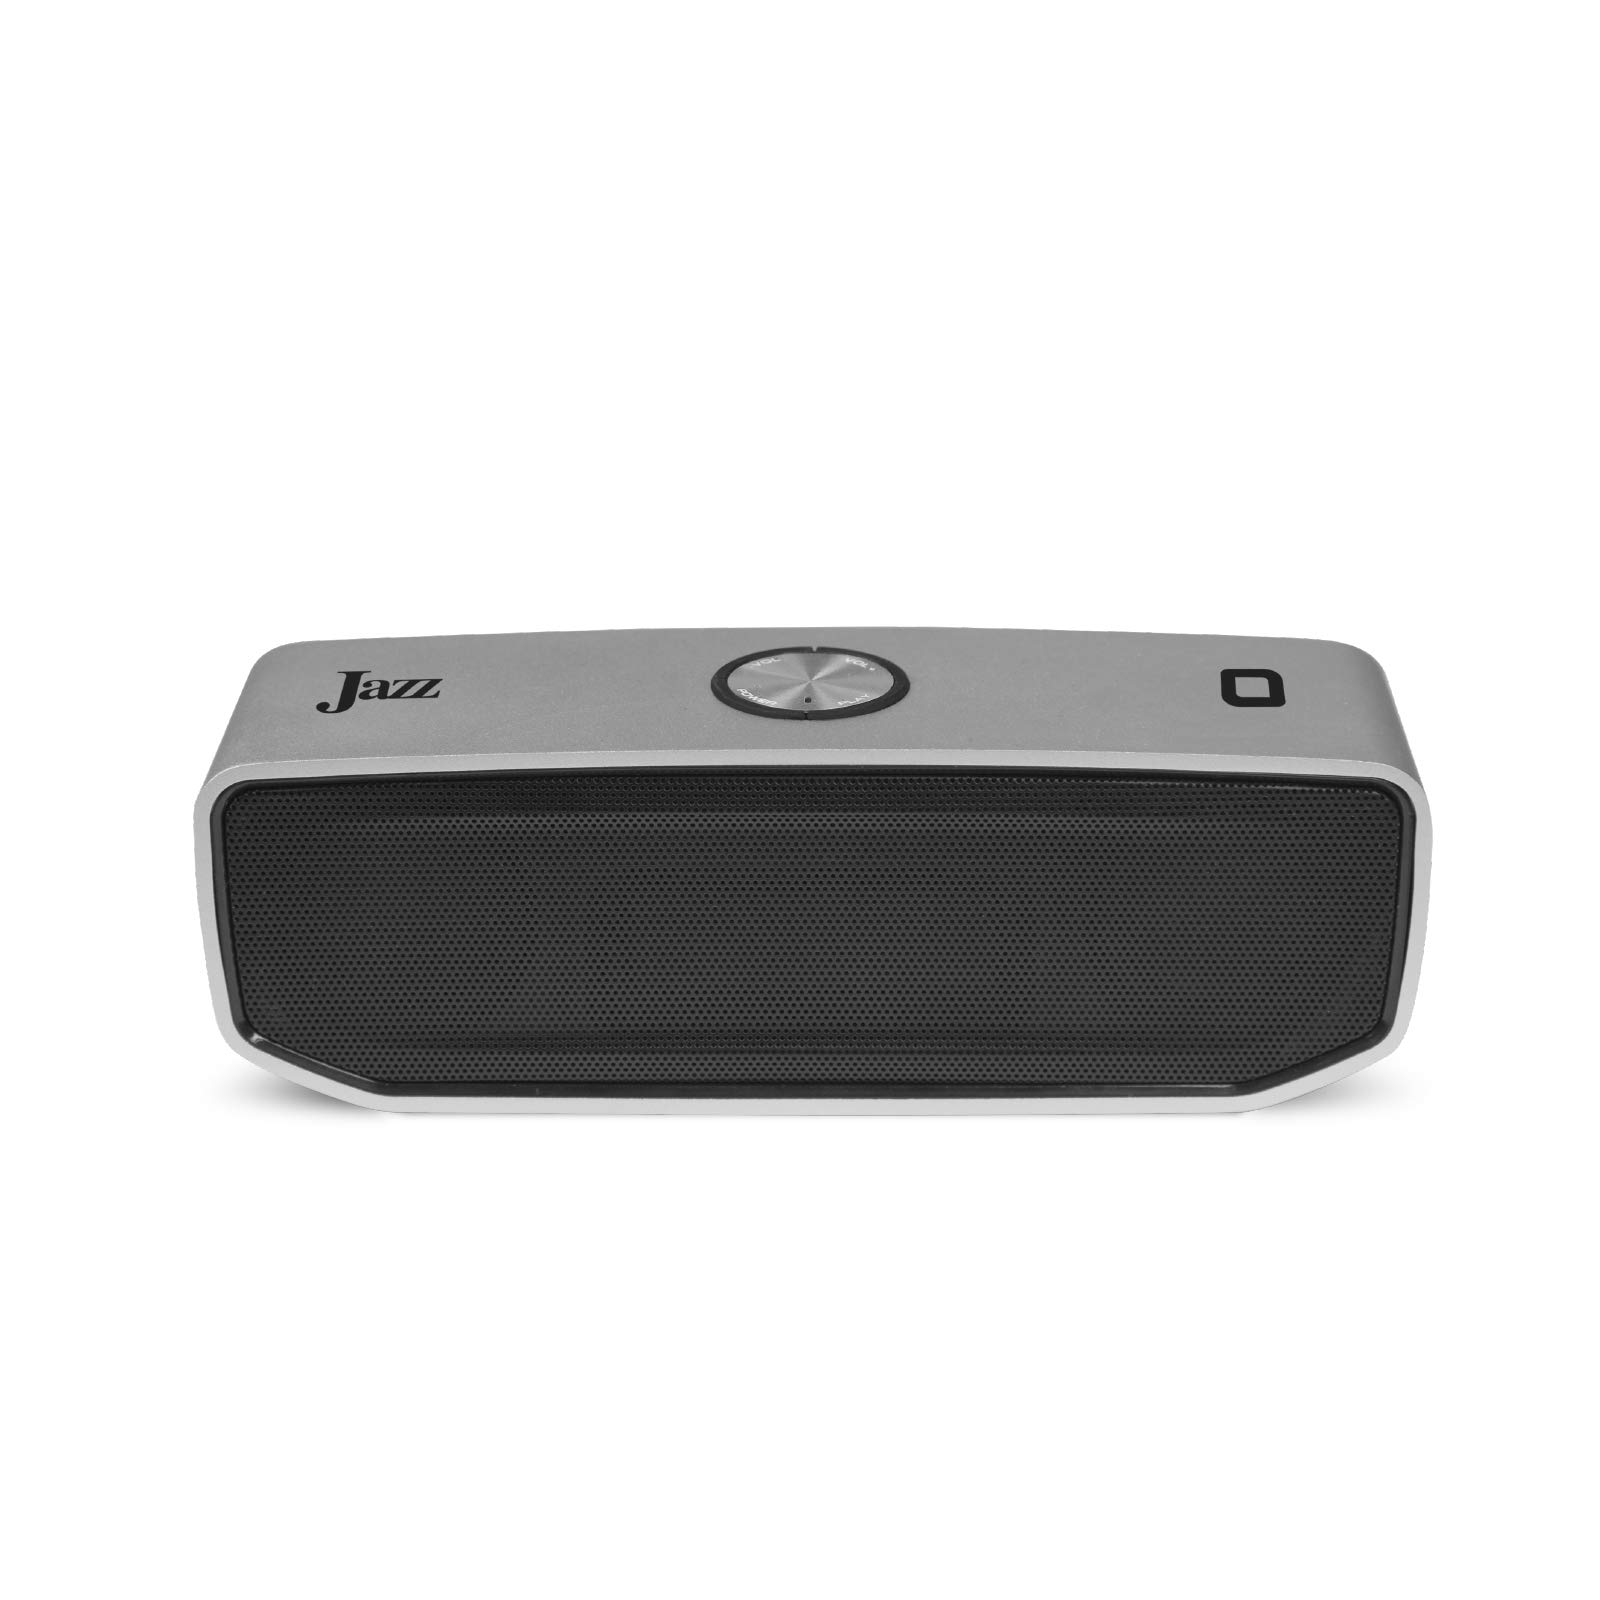 JAZ 20W Wireless Stereo Speaker mit Metallgehäuse und integrierten Bedienelementen für Musik und Anrufe, 4 Stunden Akkulaufzeit, inkl. USB-Kabel und Klinke